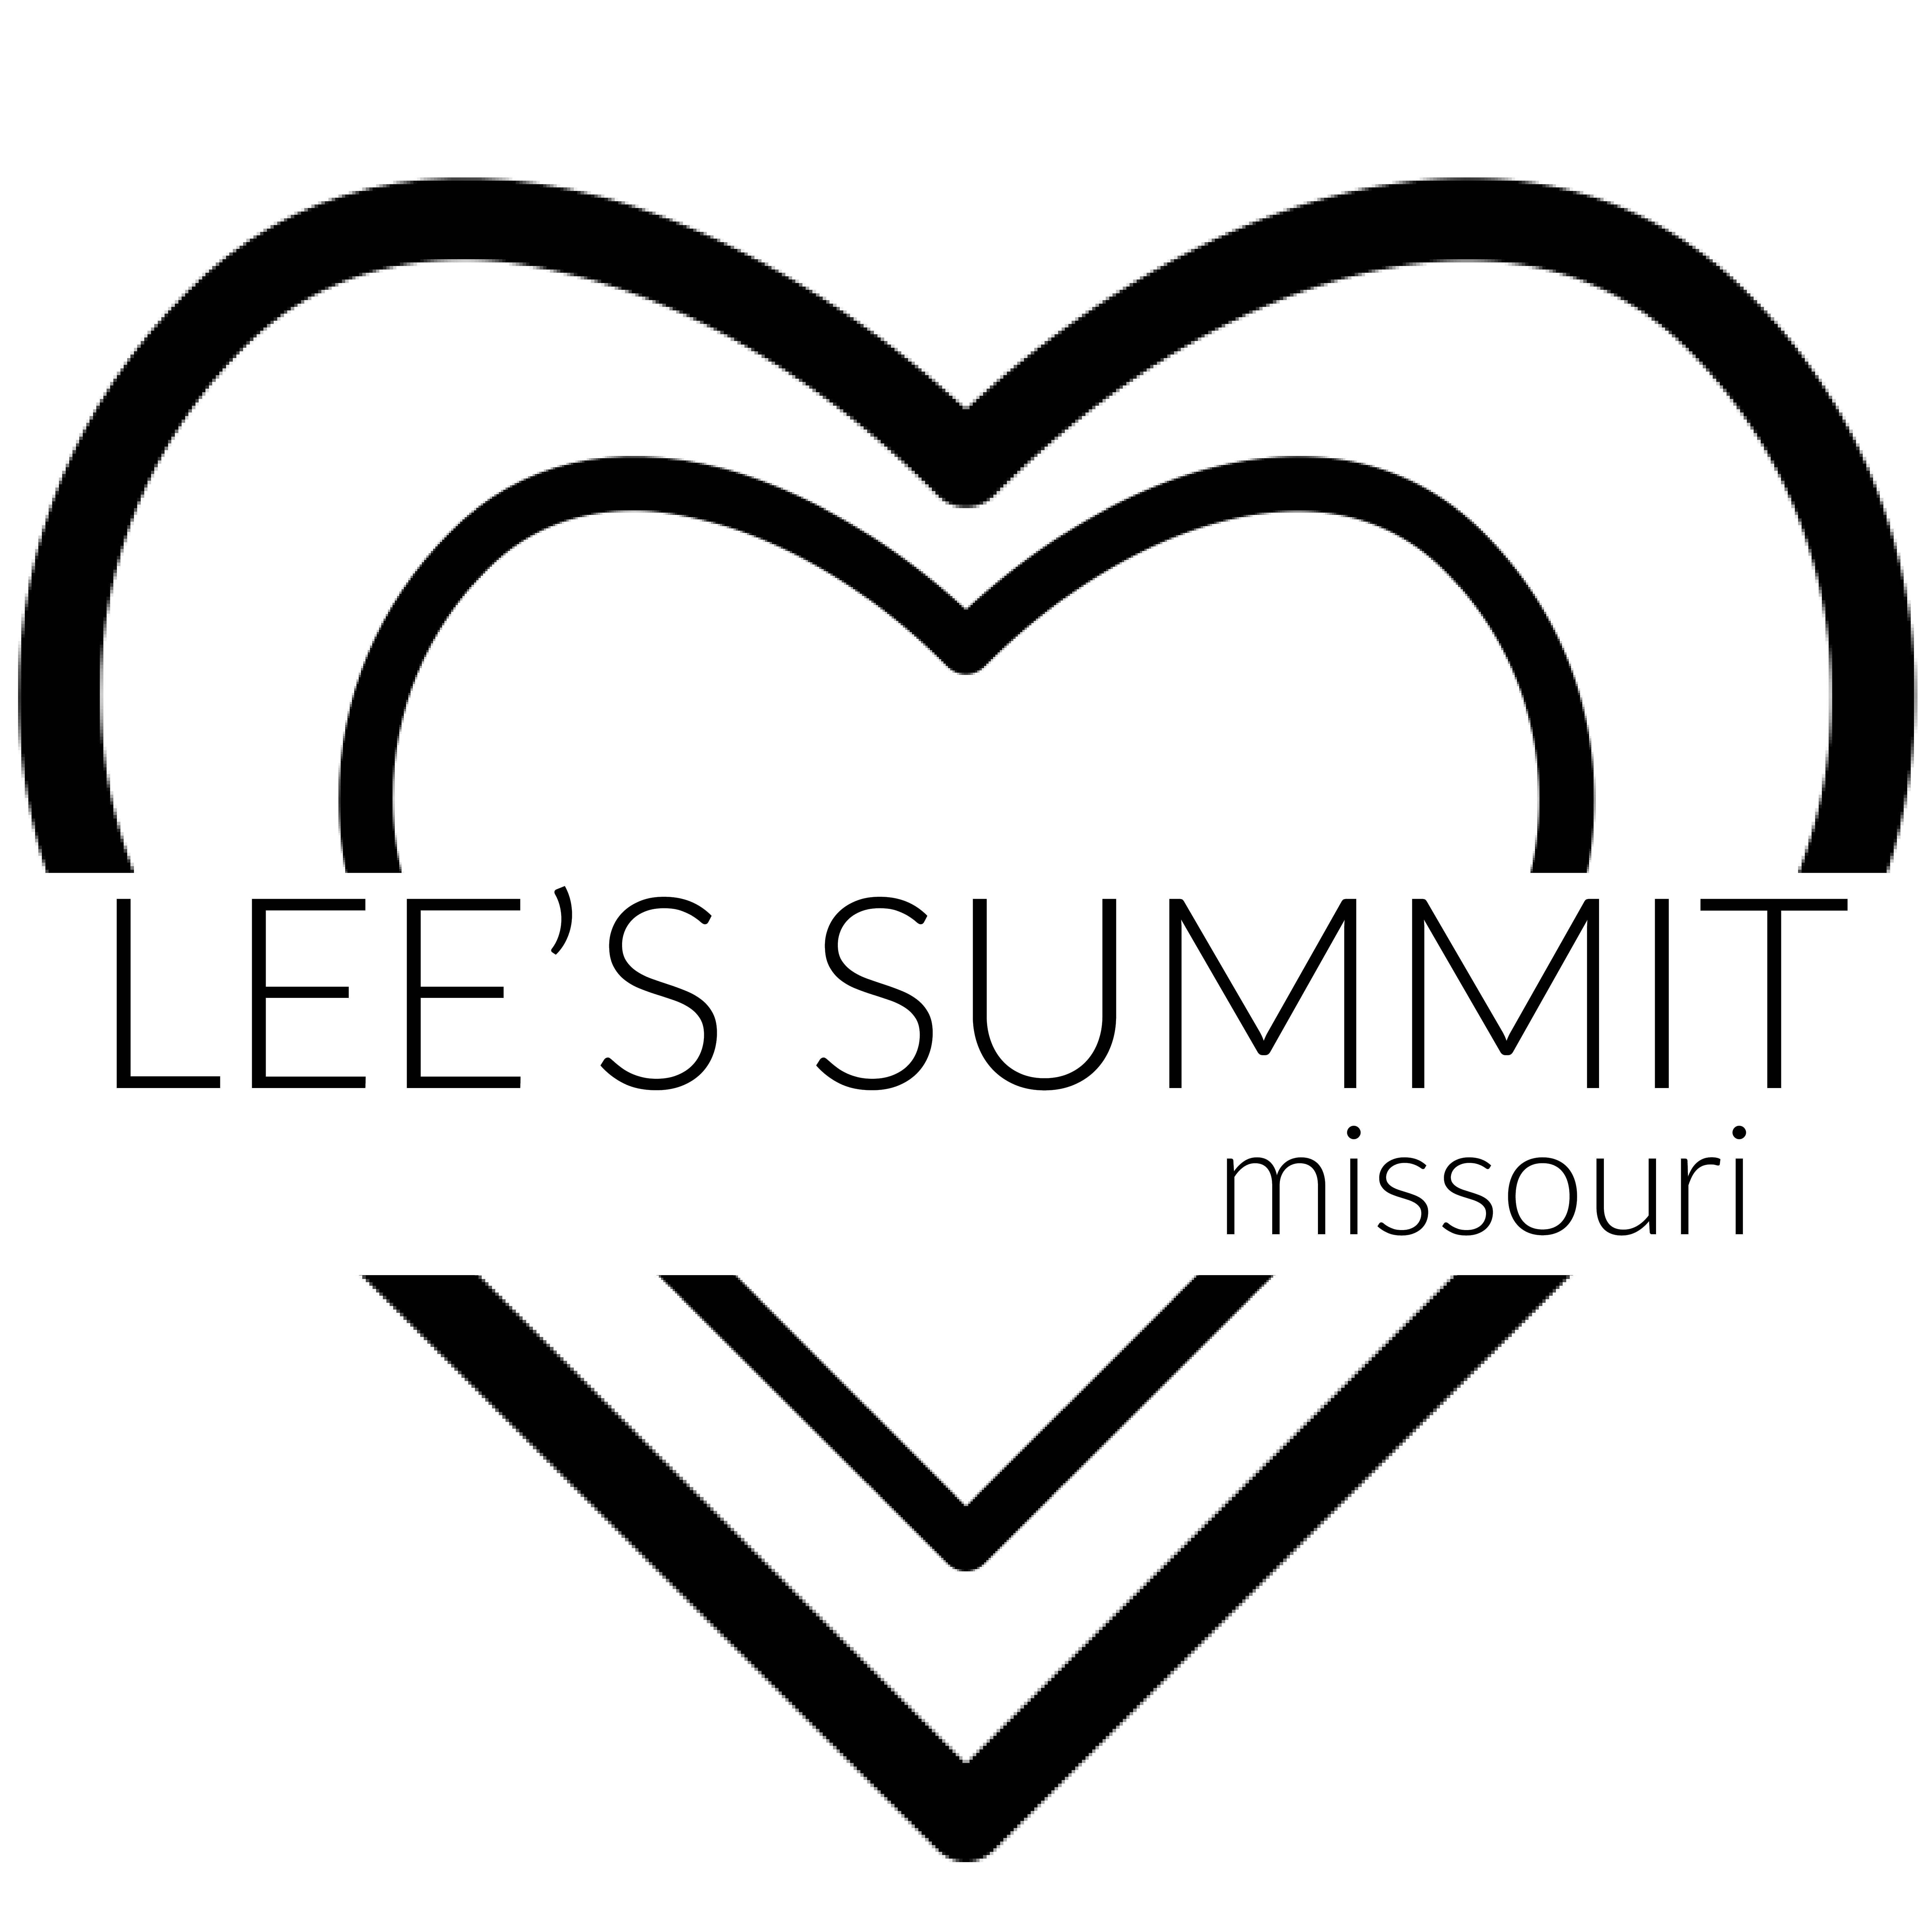 Visit Lee's Summit, Missouri